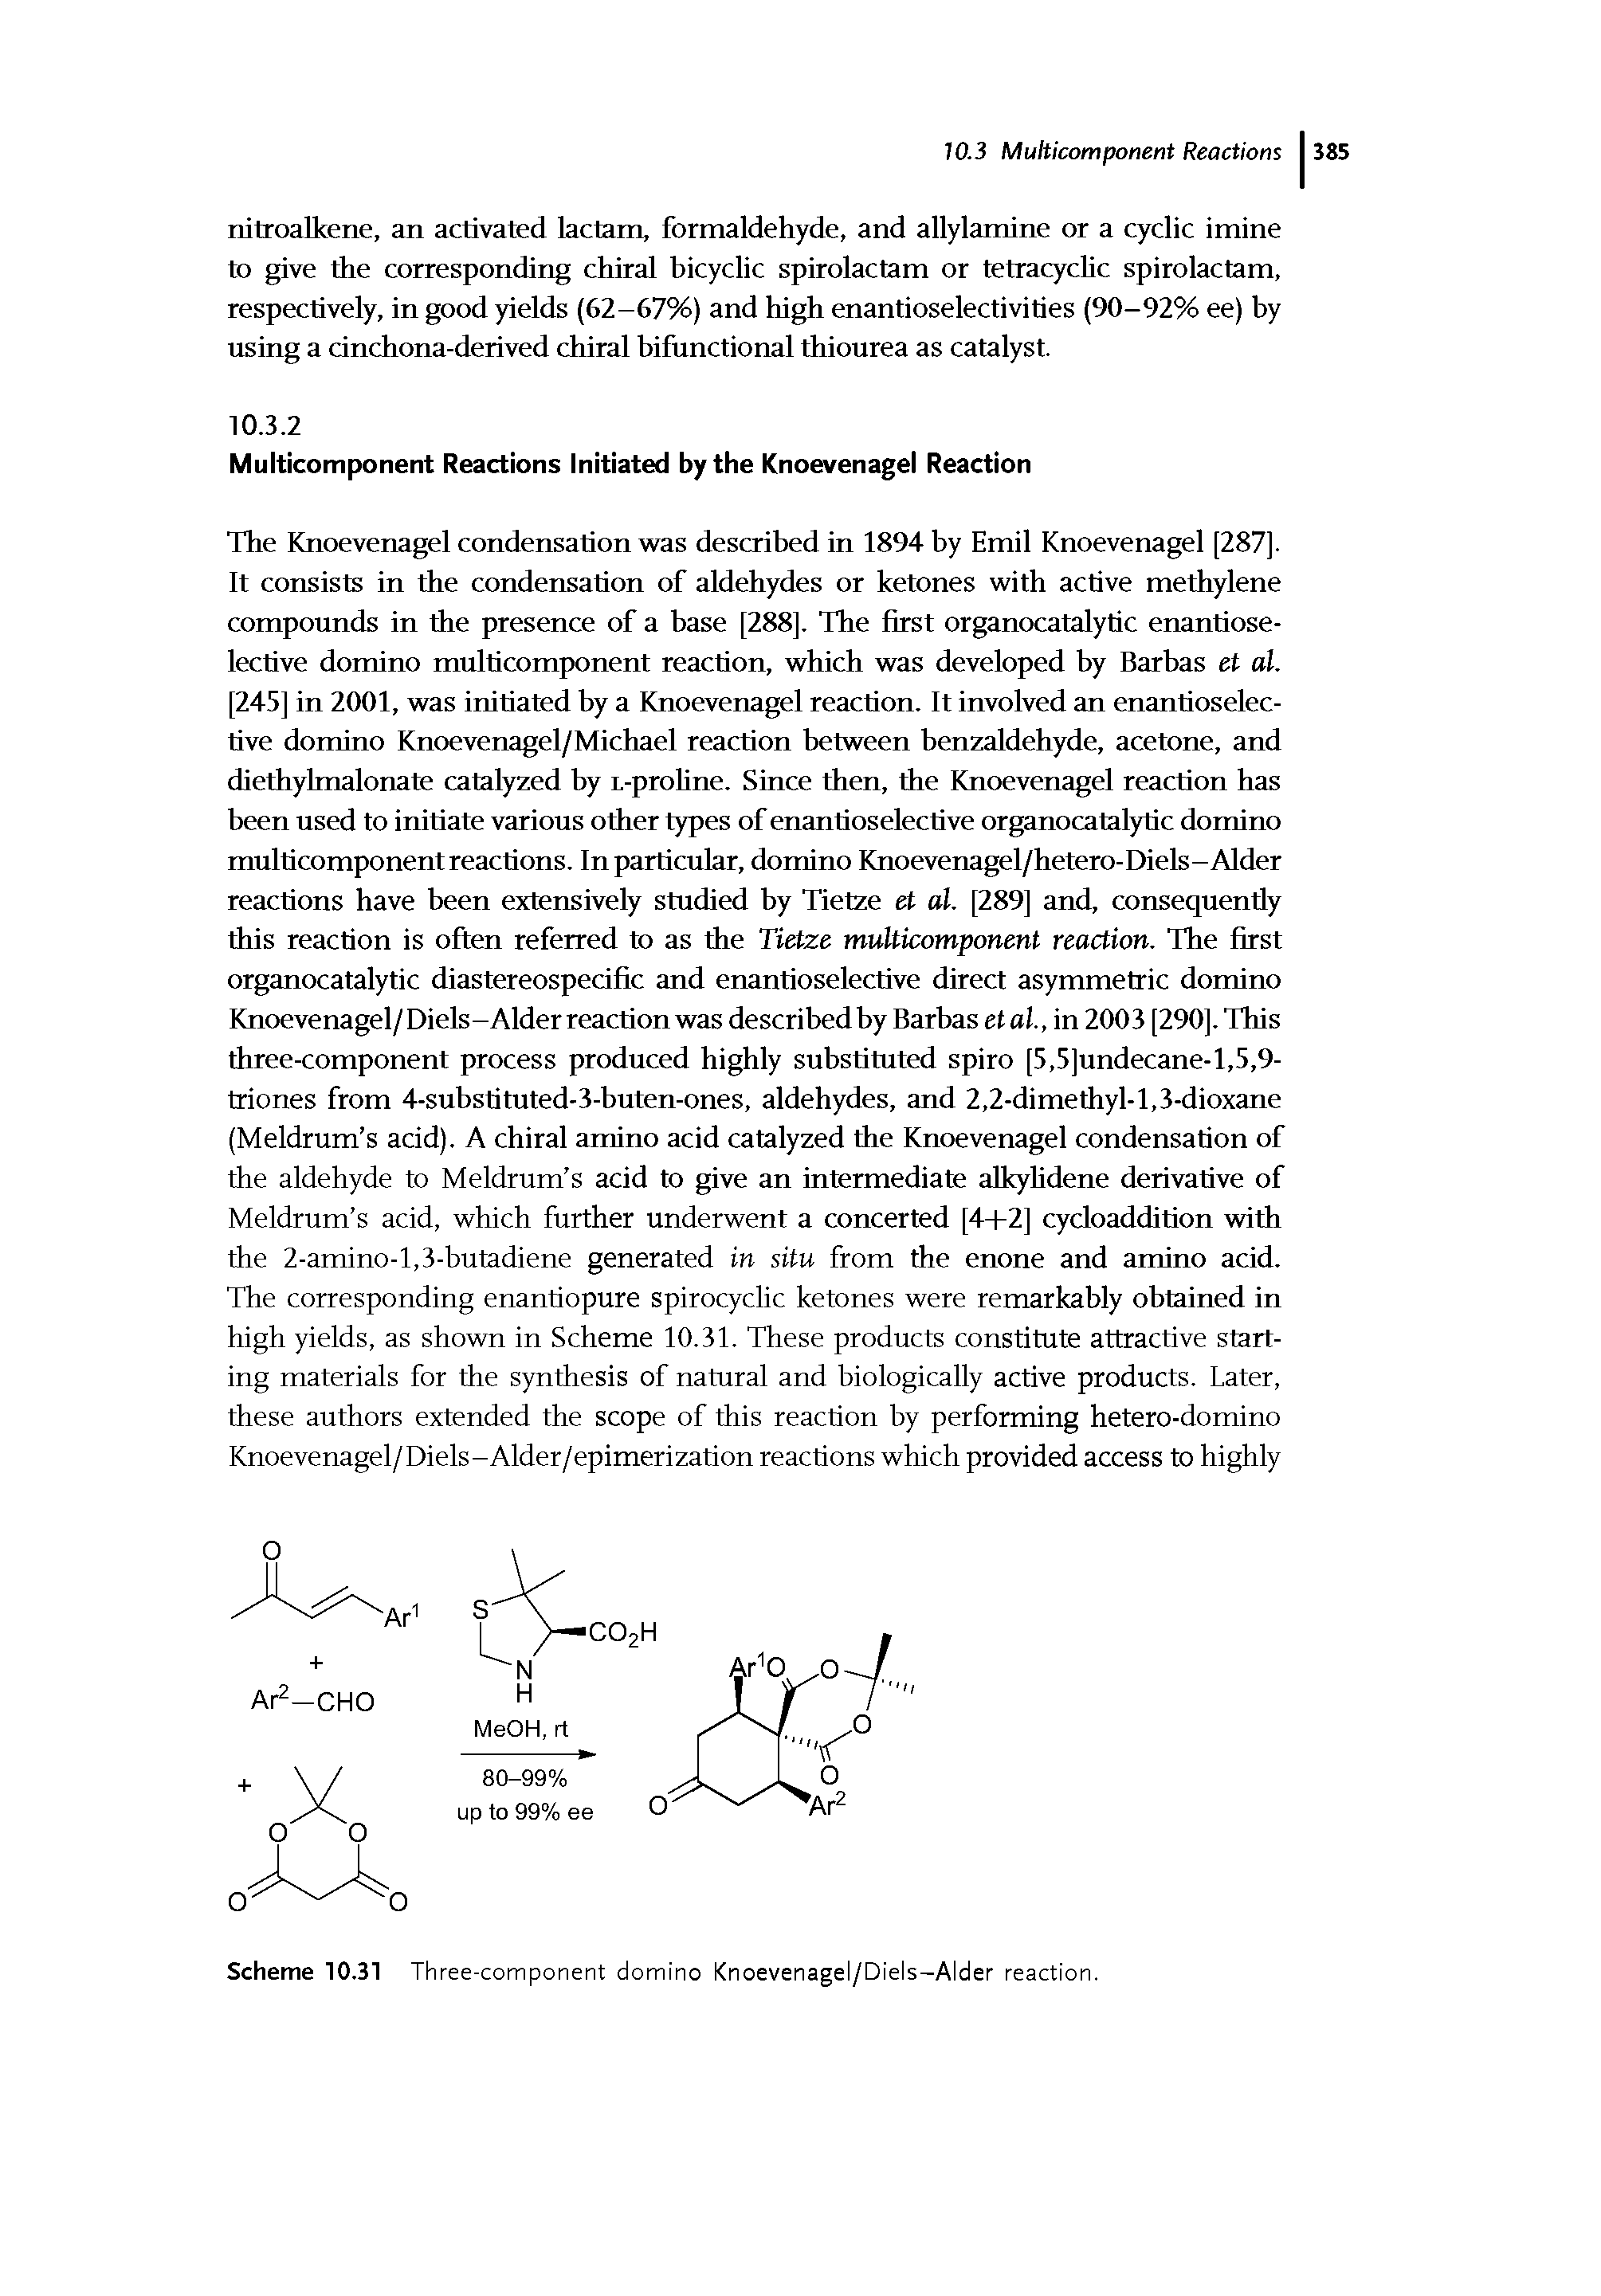 Scheme 10.31 Three-component domino Knoevenagel/Diels-Alder reaction.